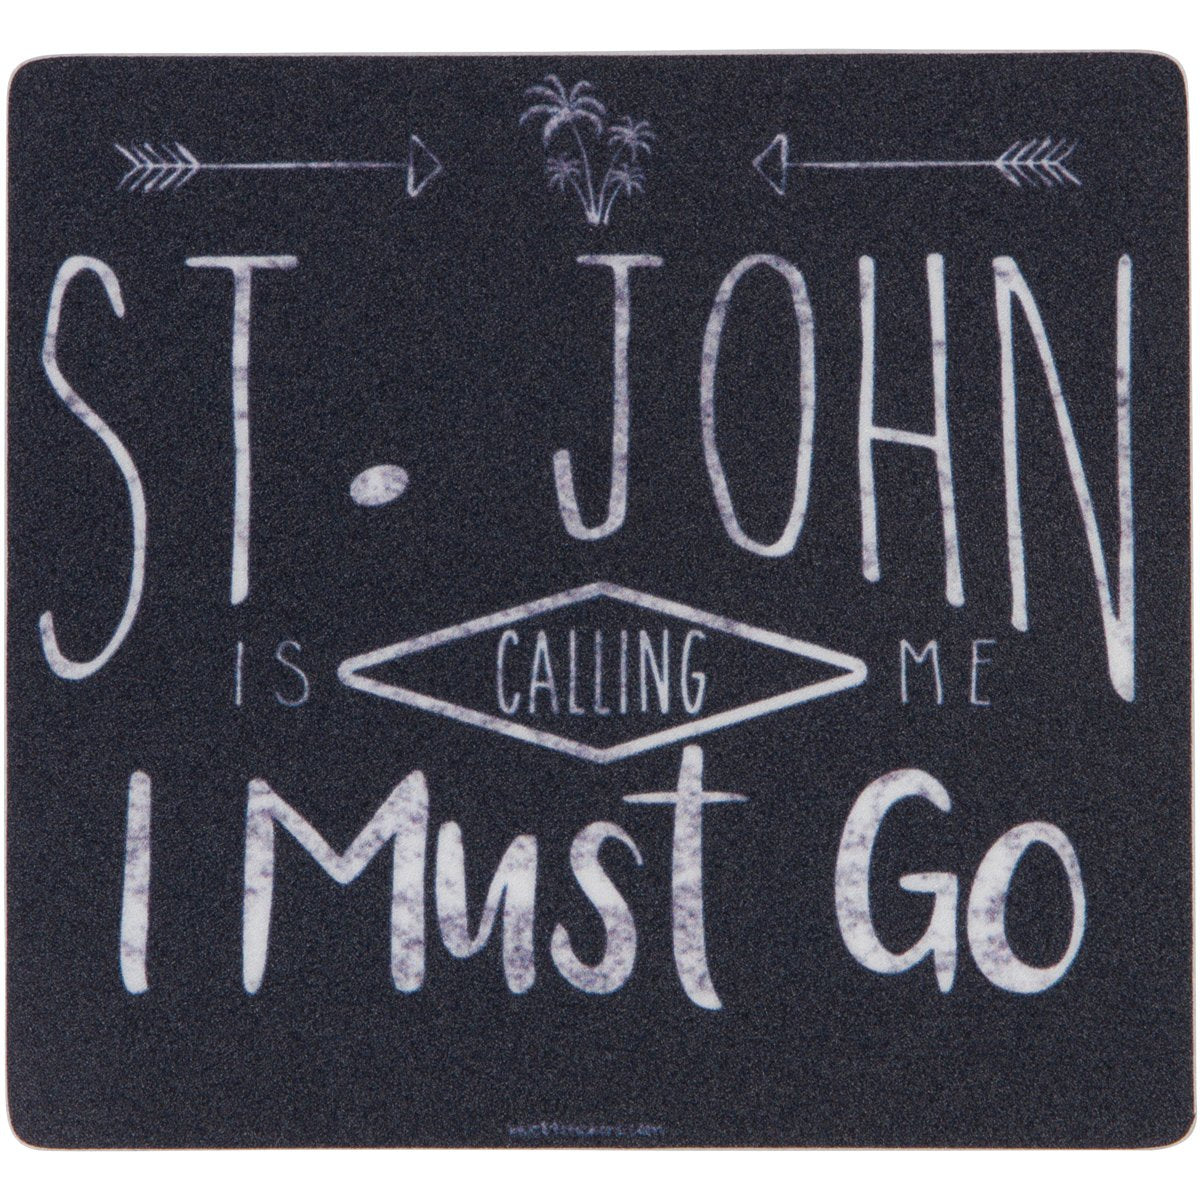 ST. JOHN IS CALLING MAGNET